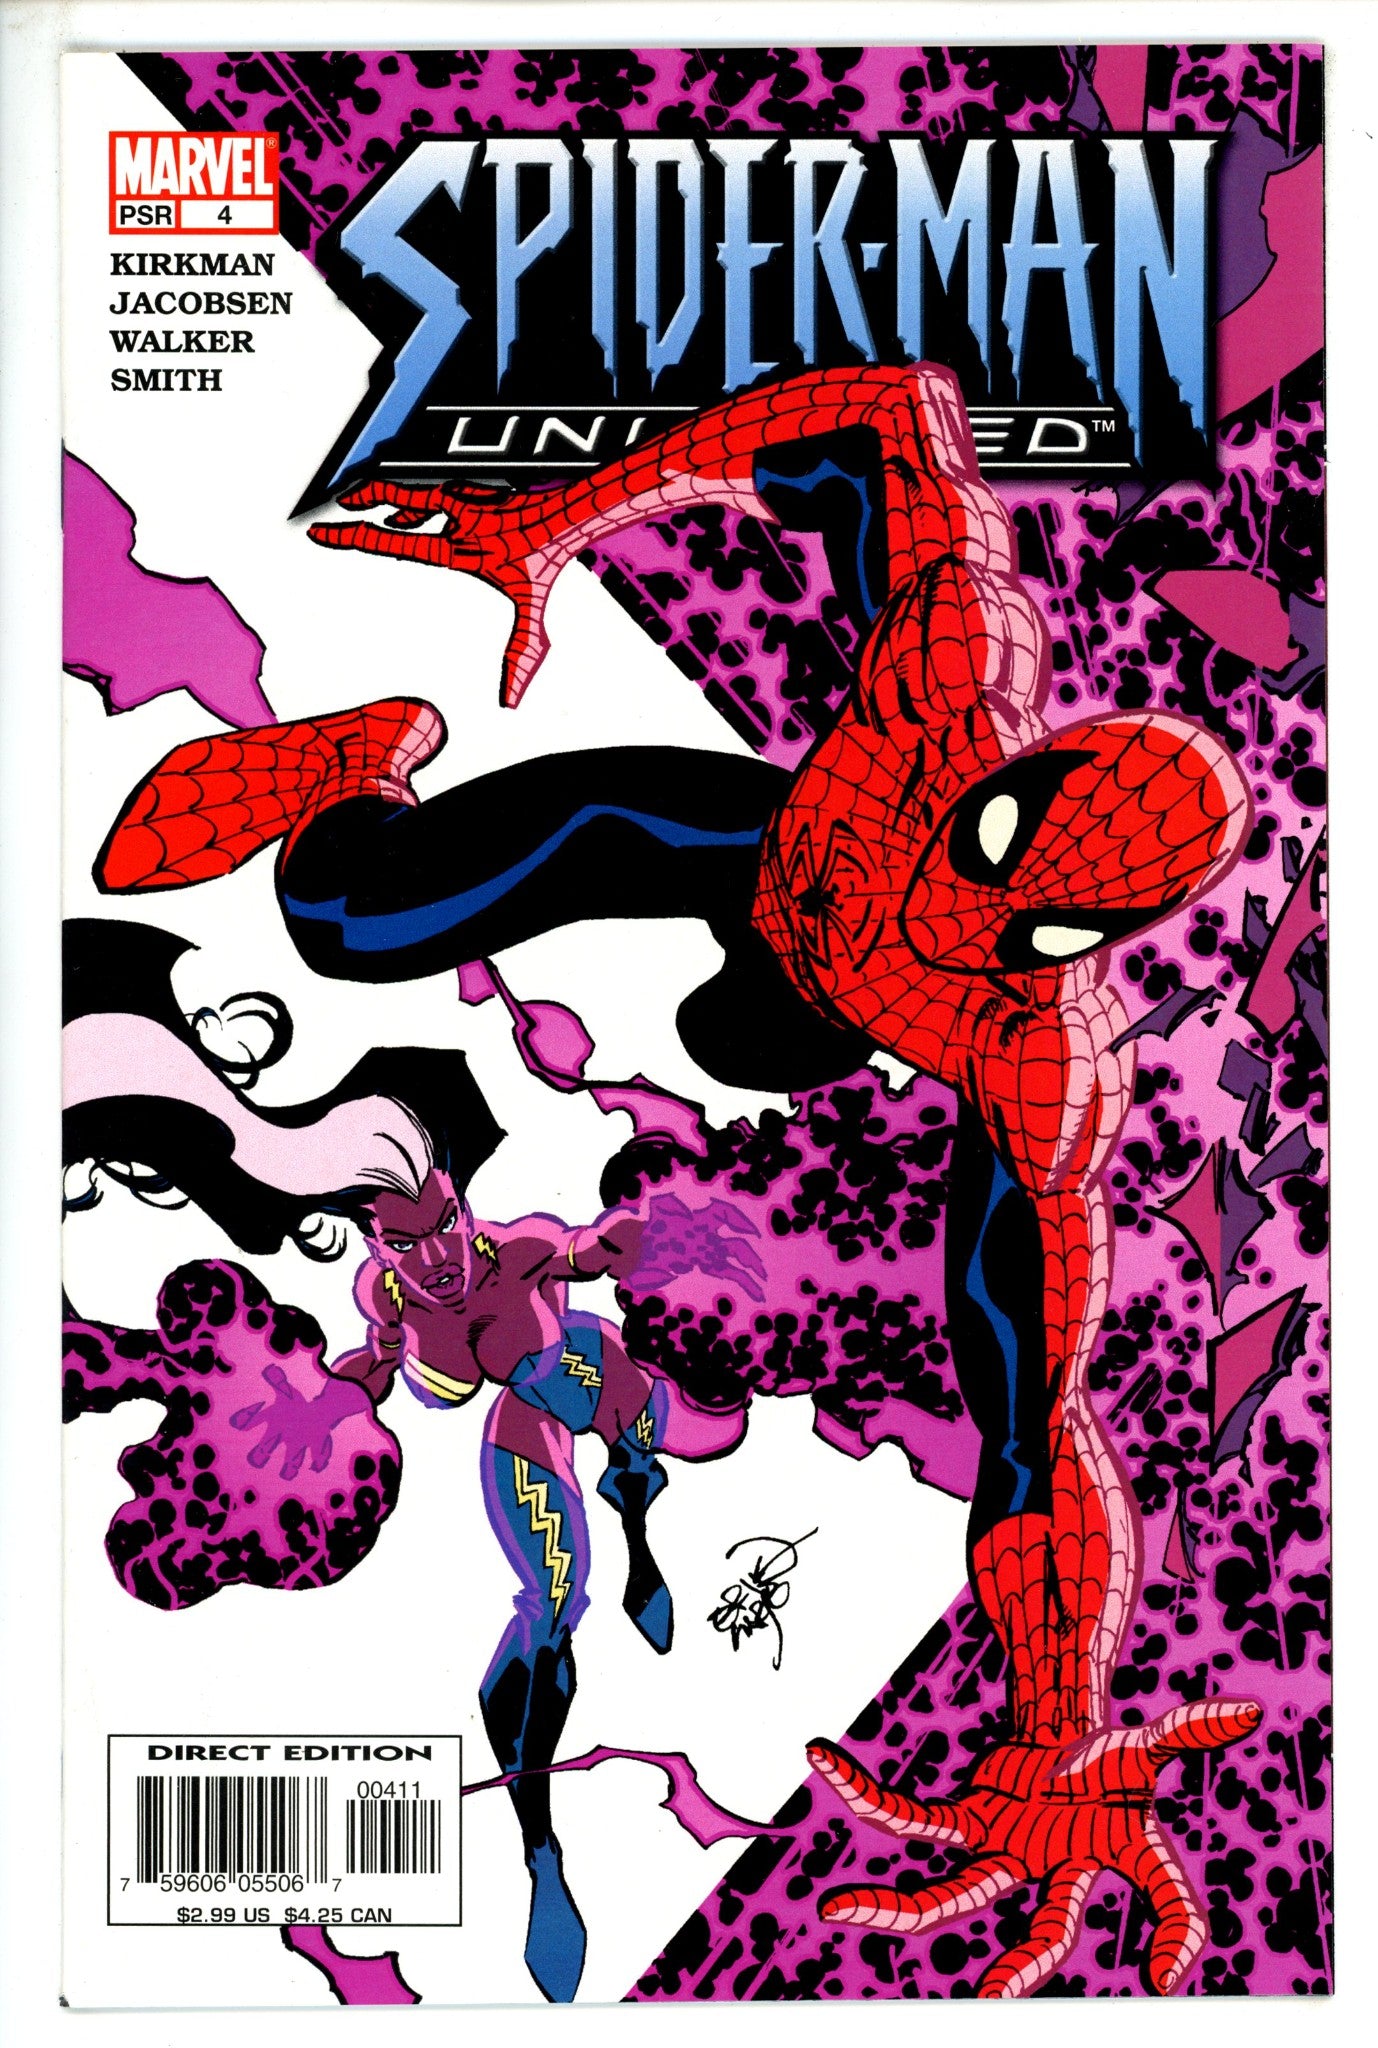 Spider-Man Unlimited Vol 3 4 (2004)